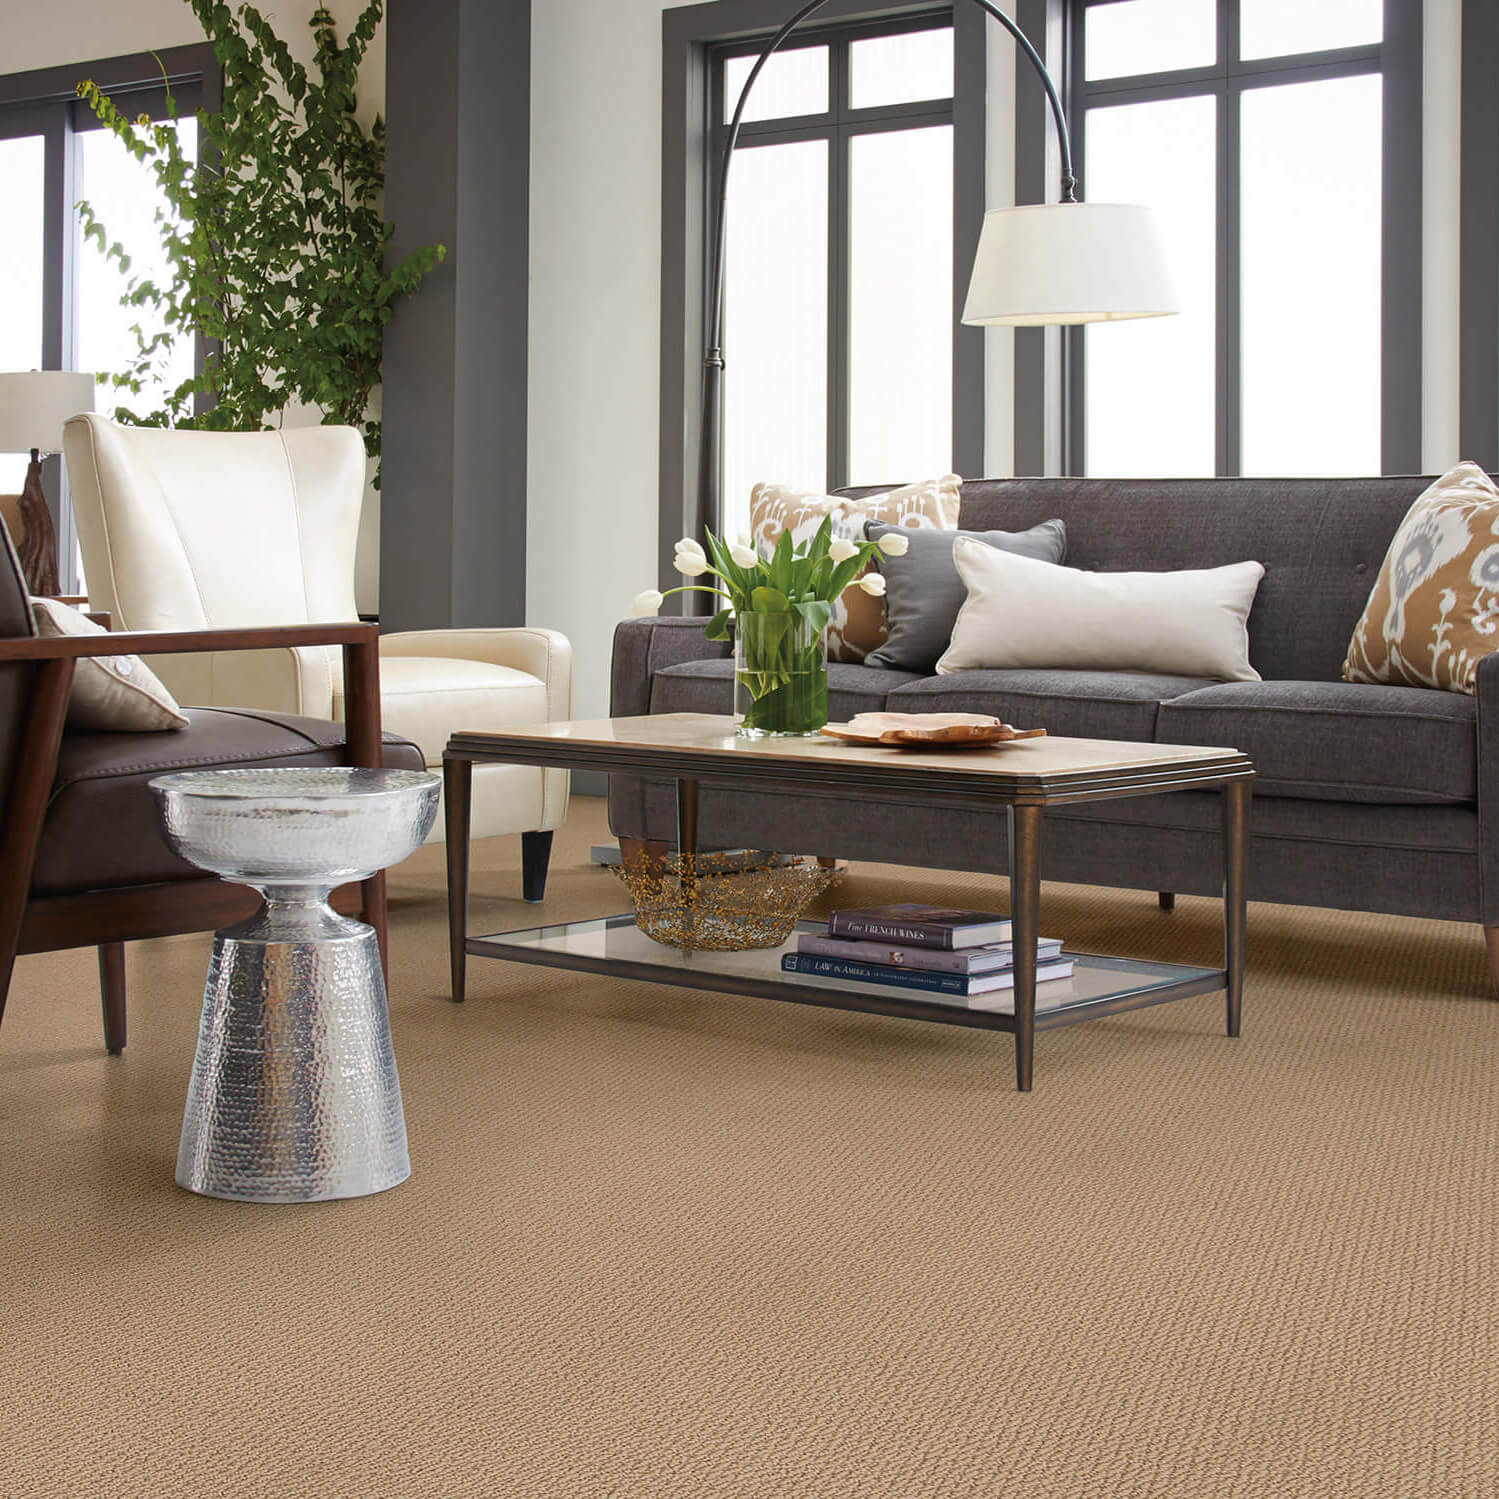 Living room carpet | Baker Valley Floors